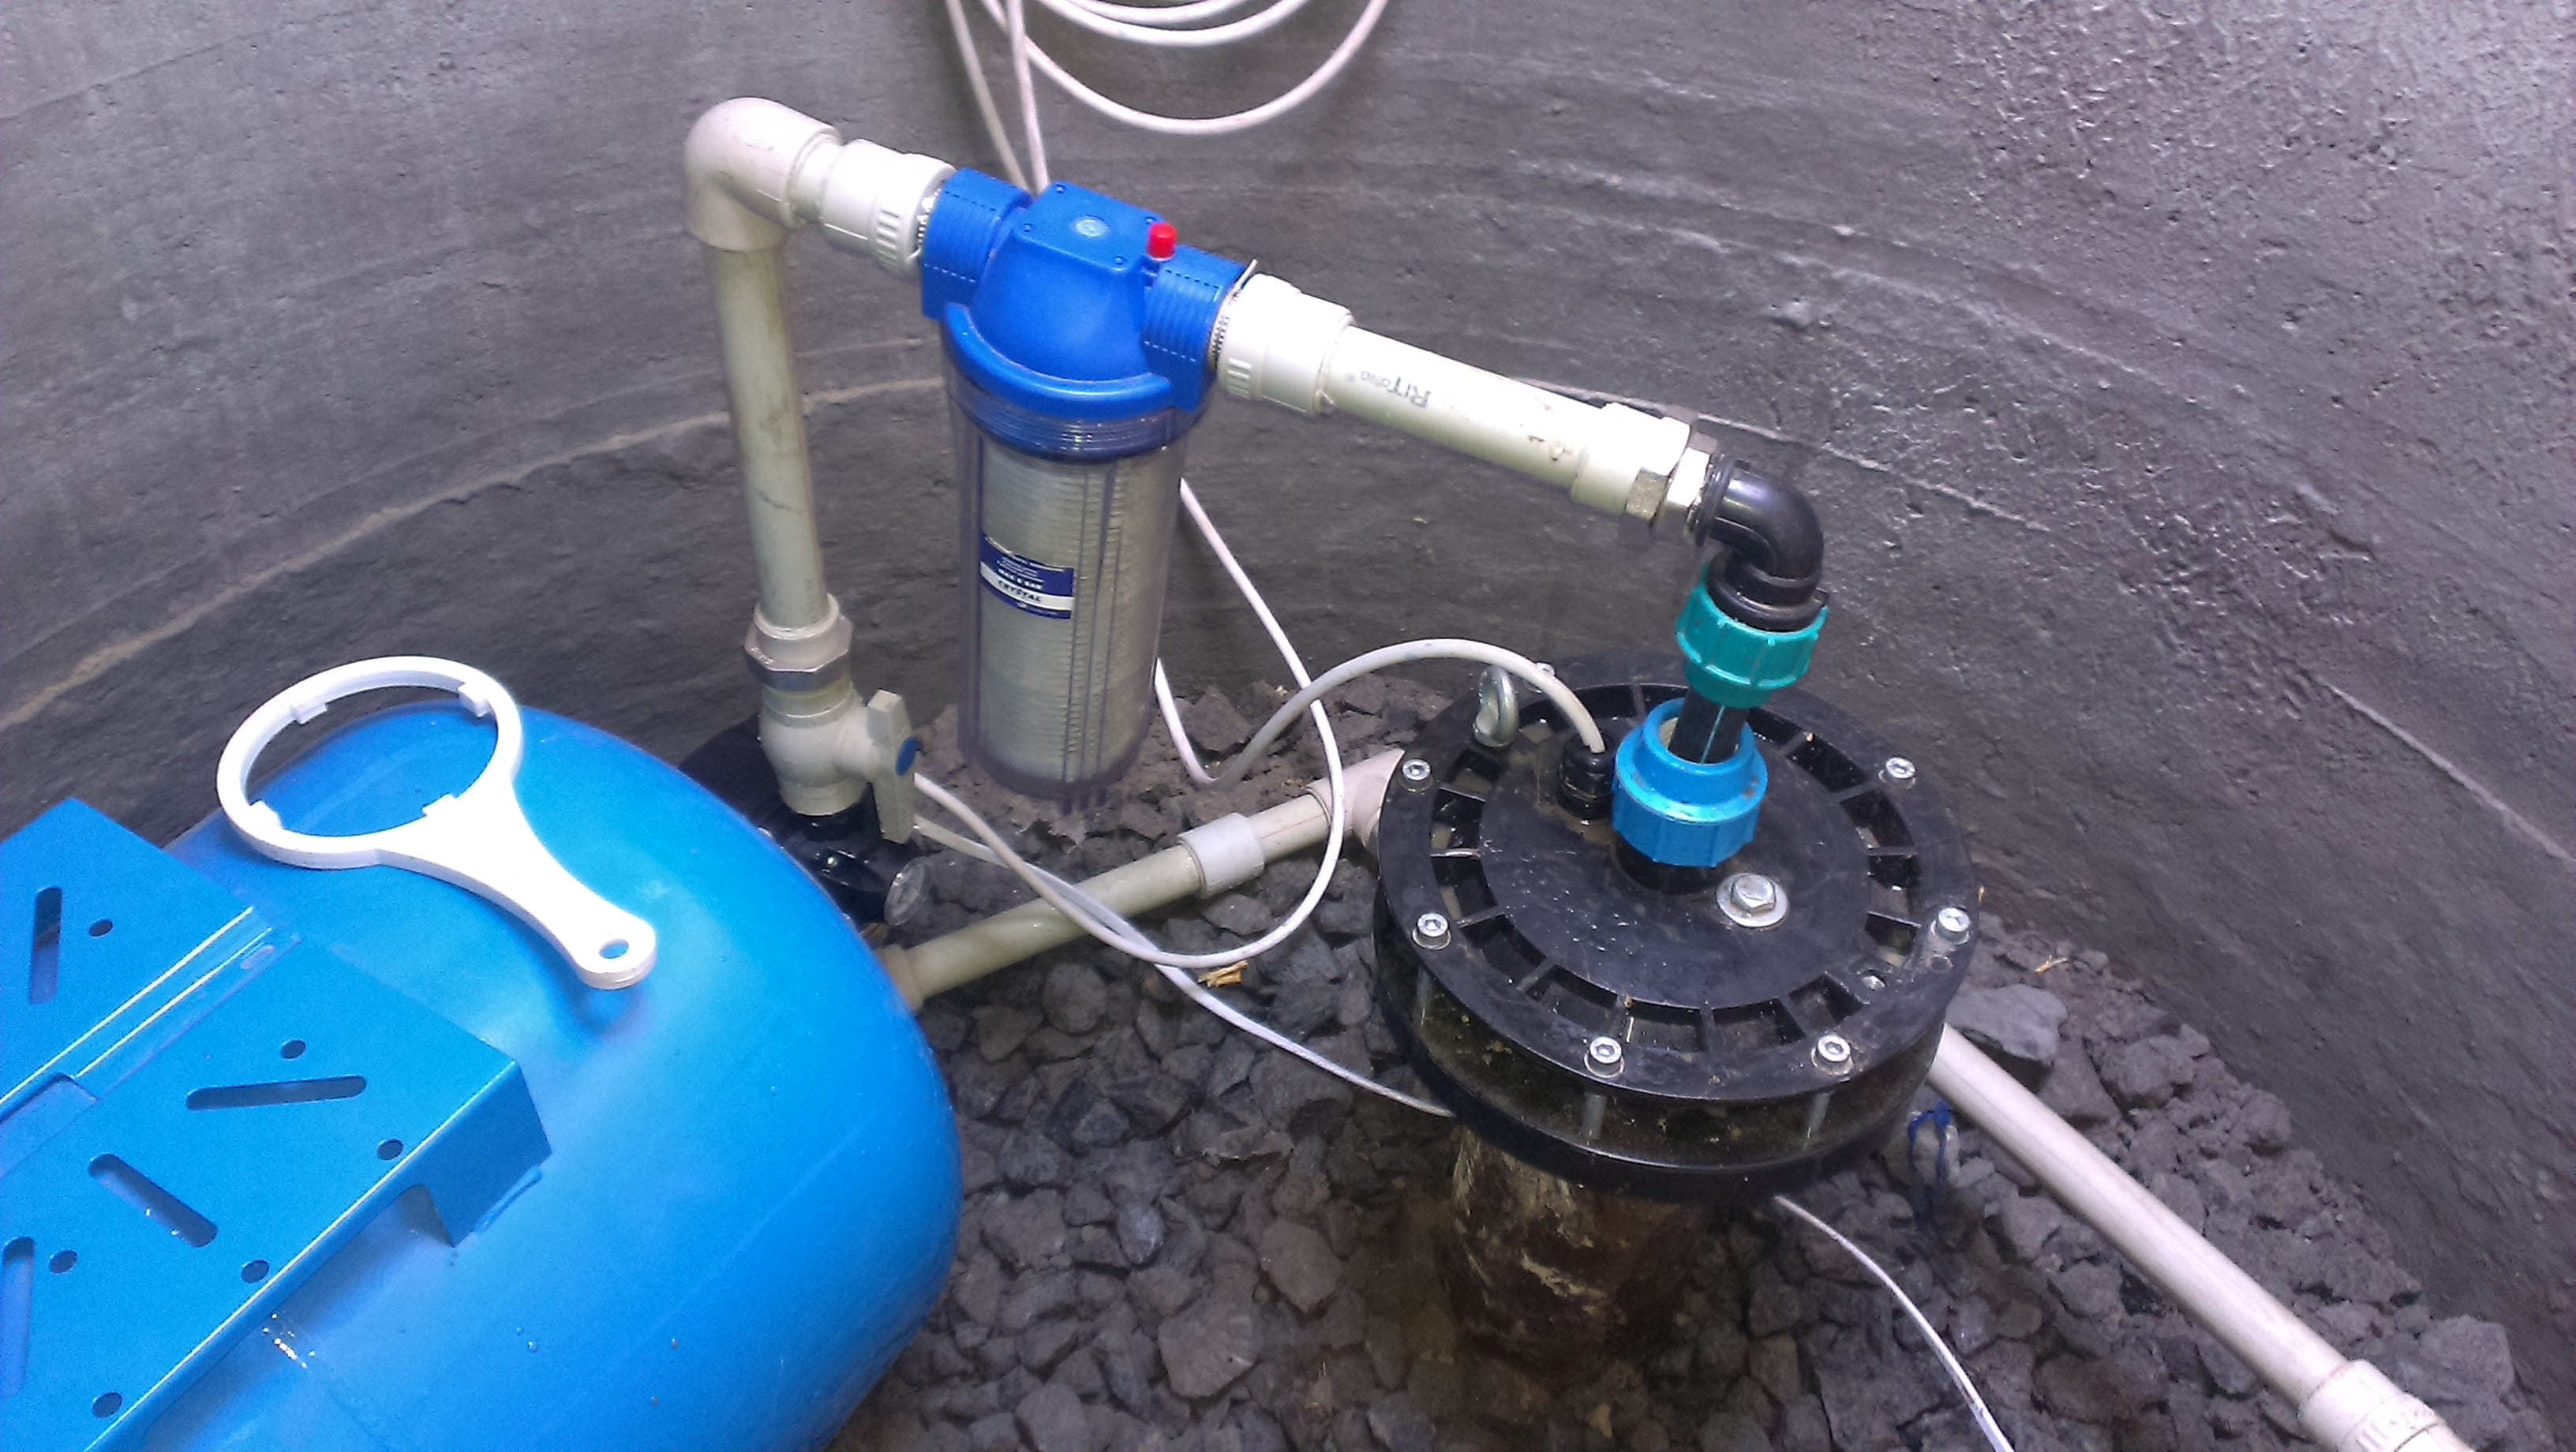 Обустройство скважины на воду своими руками на даче: инструкция, варианты решения.